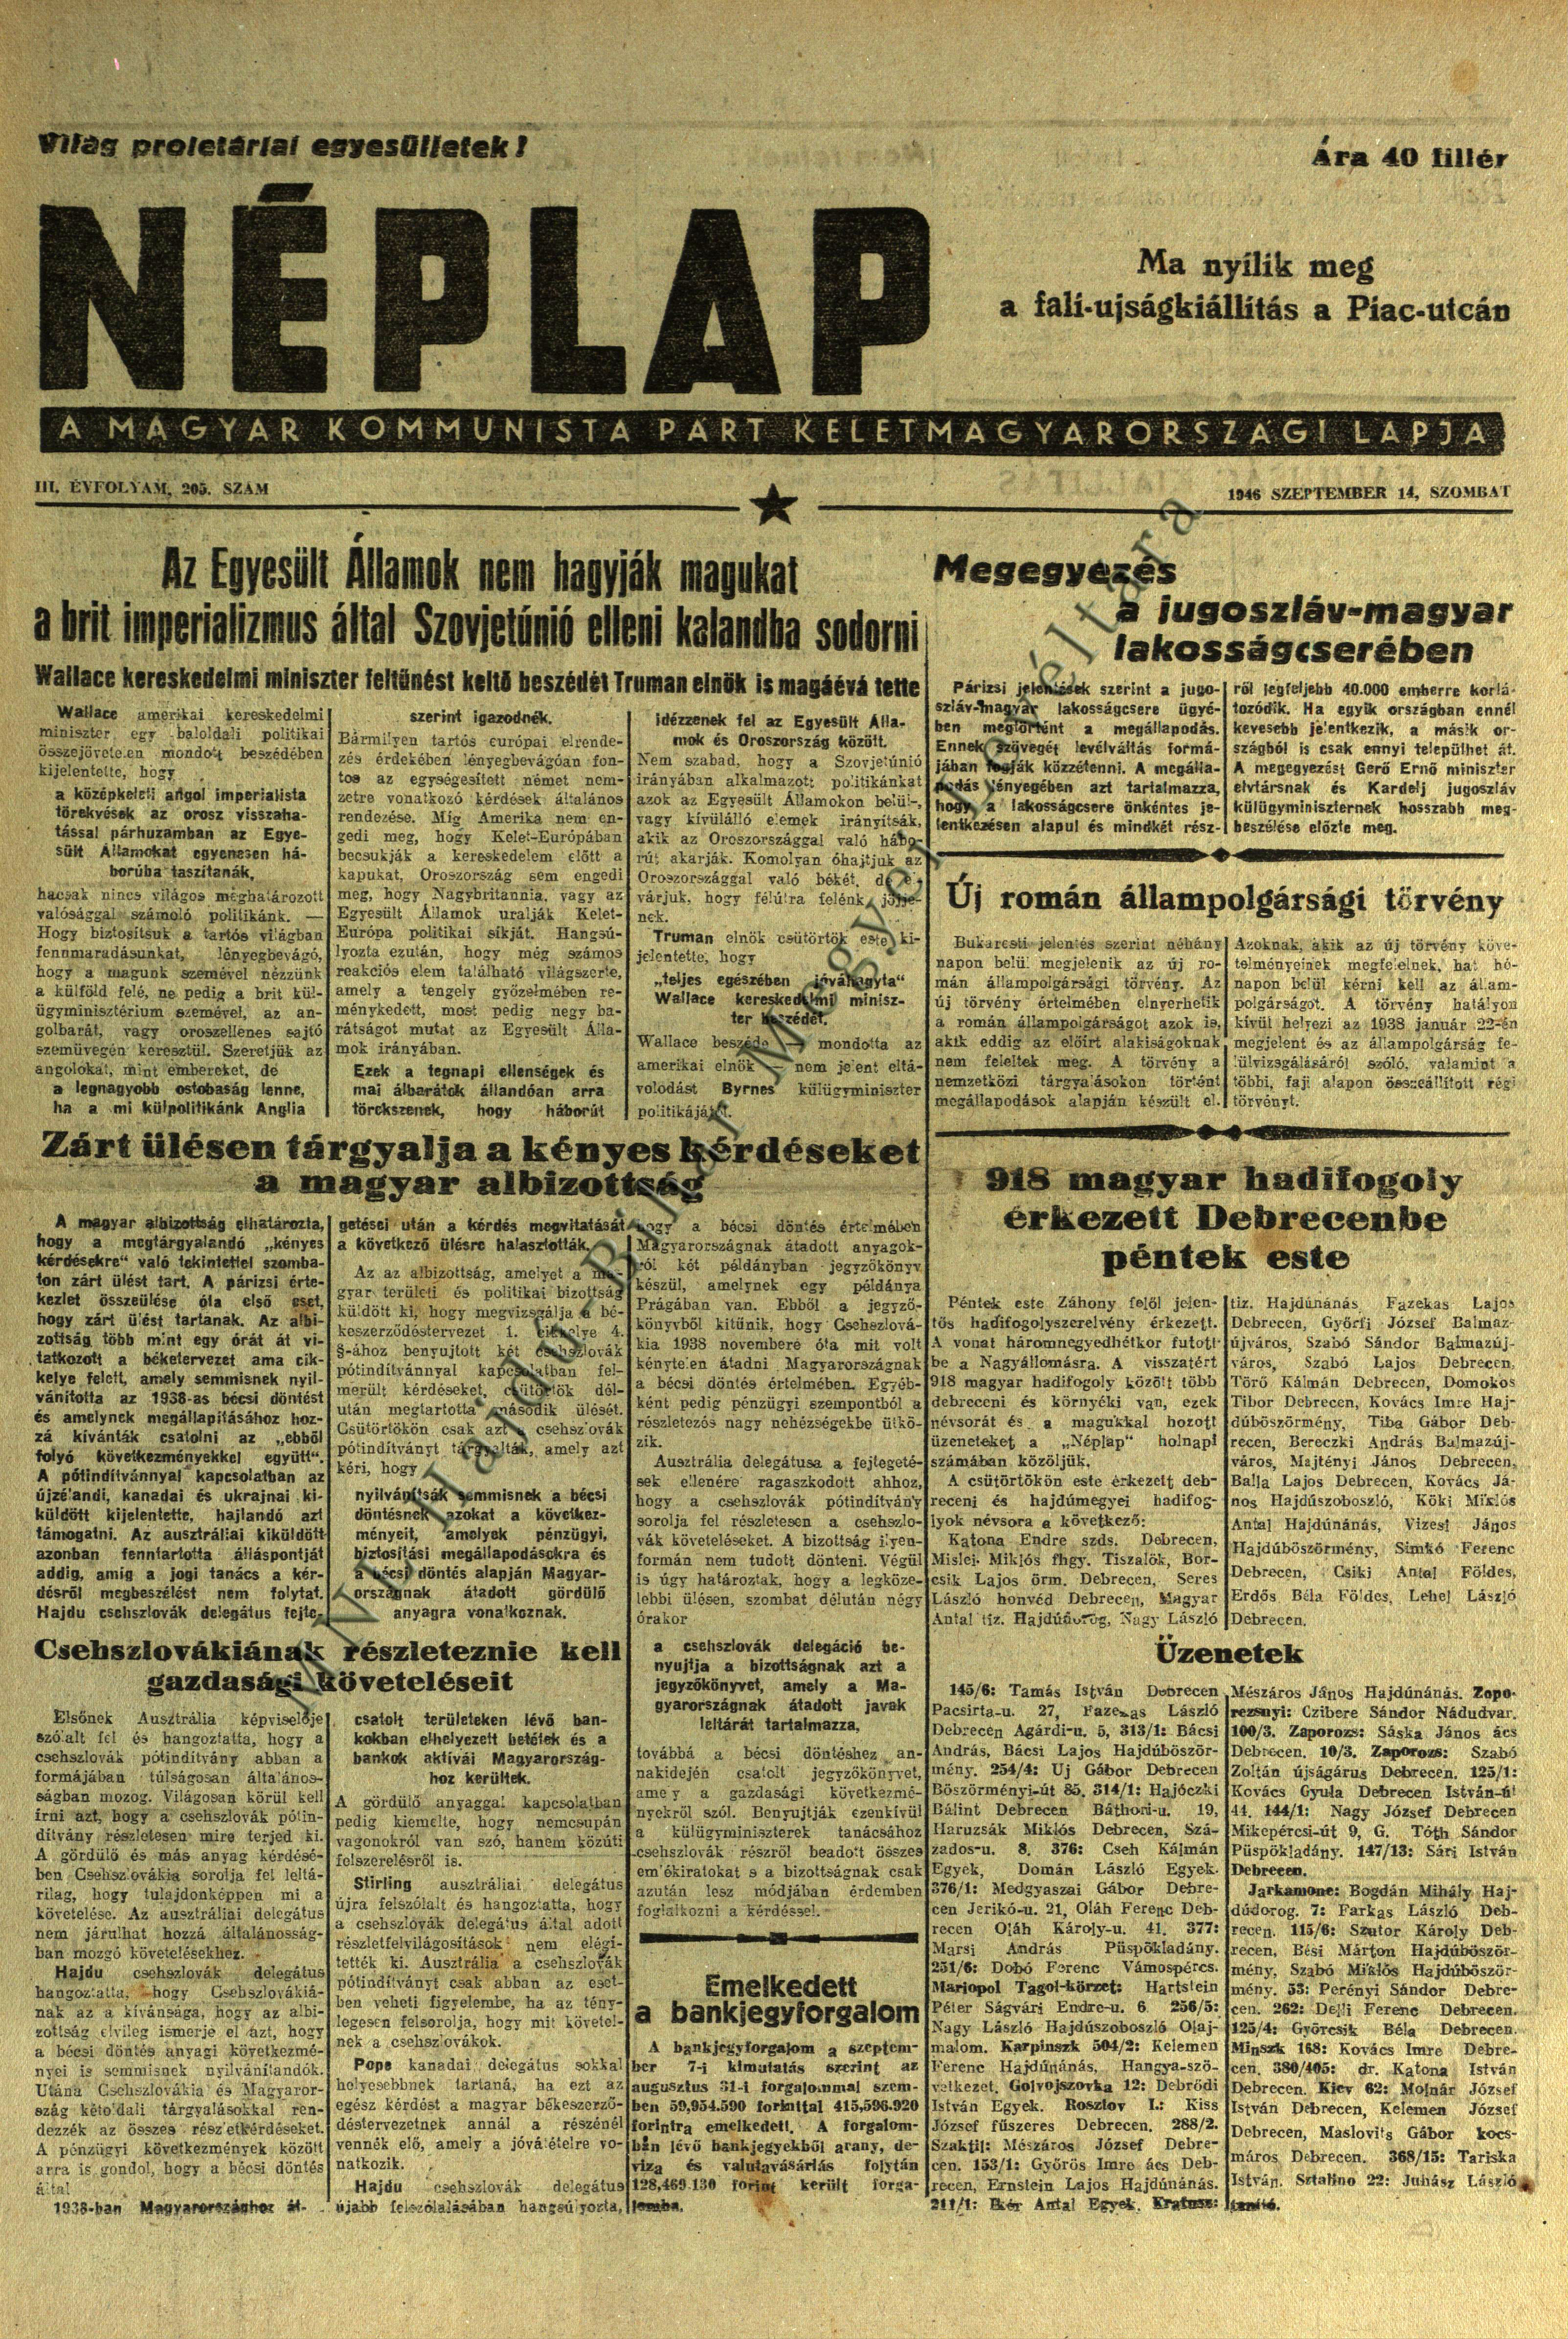 918 magyar hadifogoly érkezett Debrecenbe péntek este (Néplap 1946. szeptember 14.)